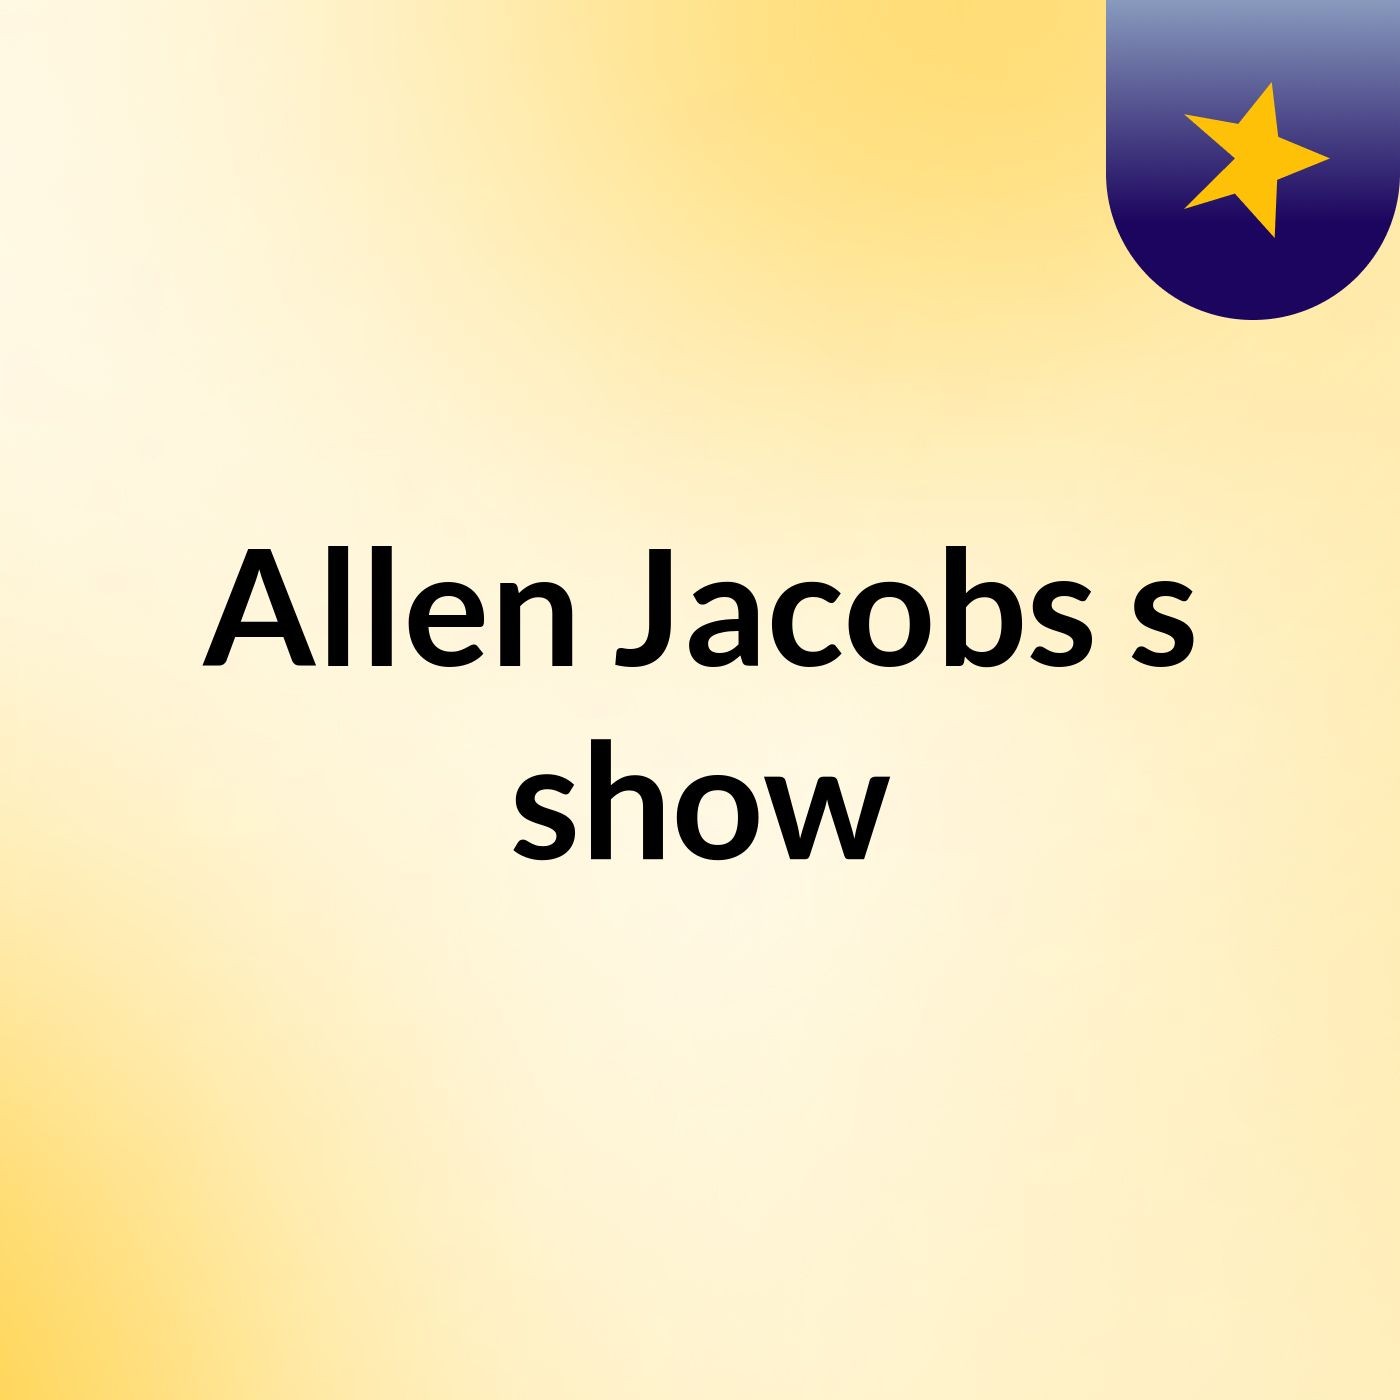 Episode 2 - Allen Jacobs's show